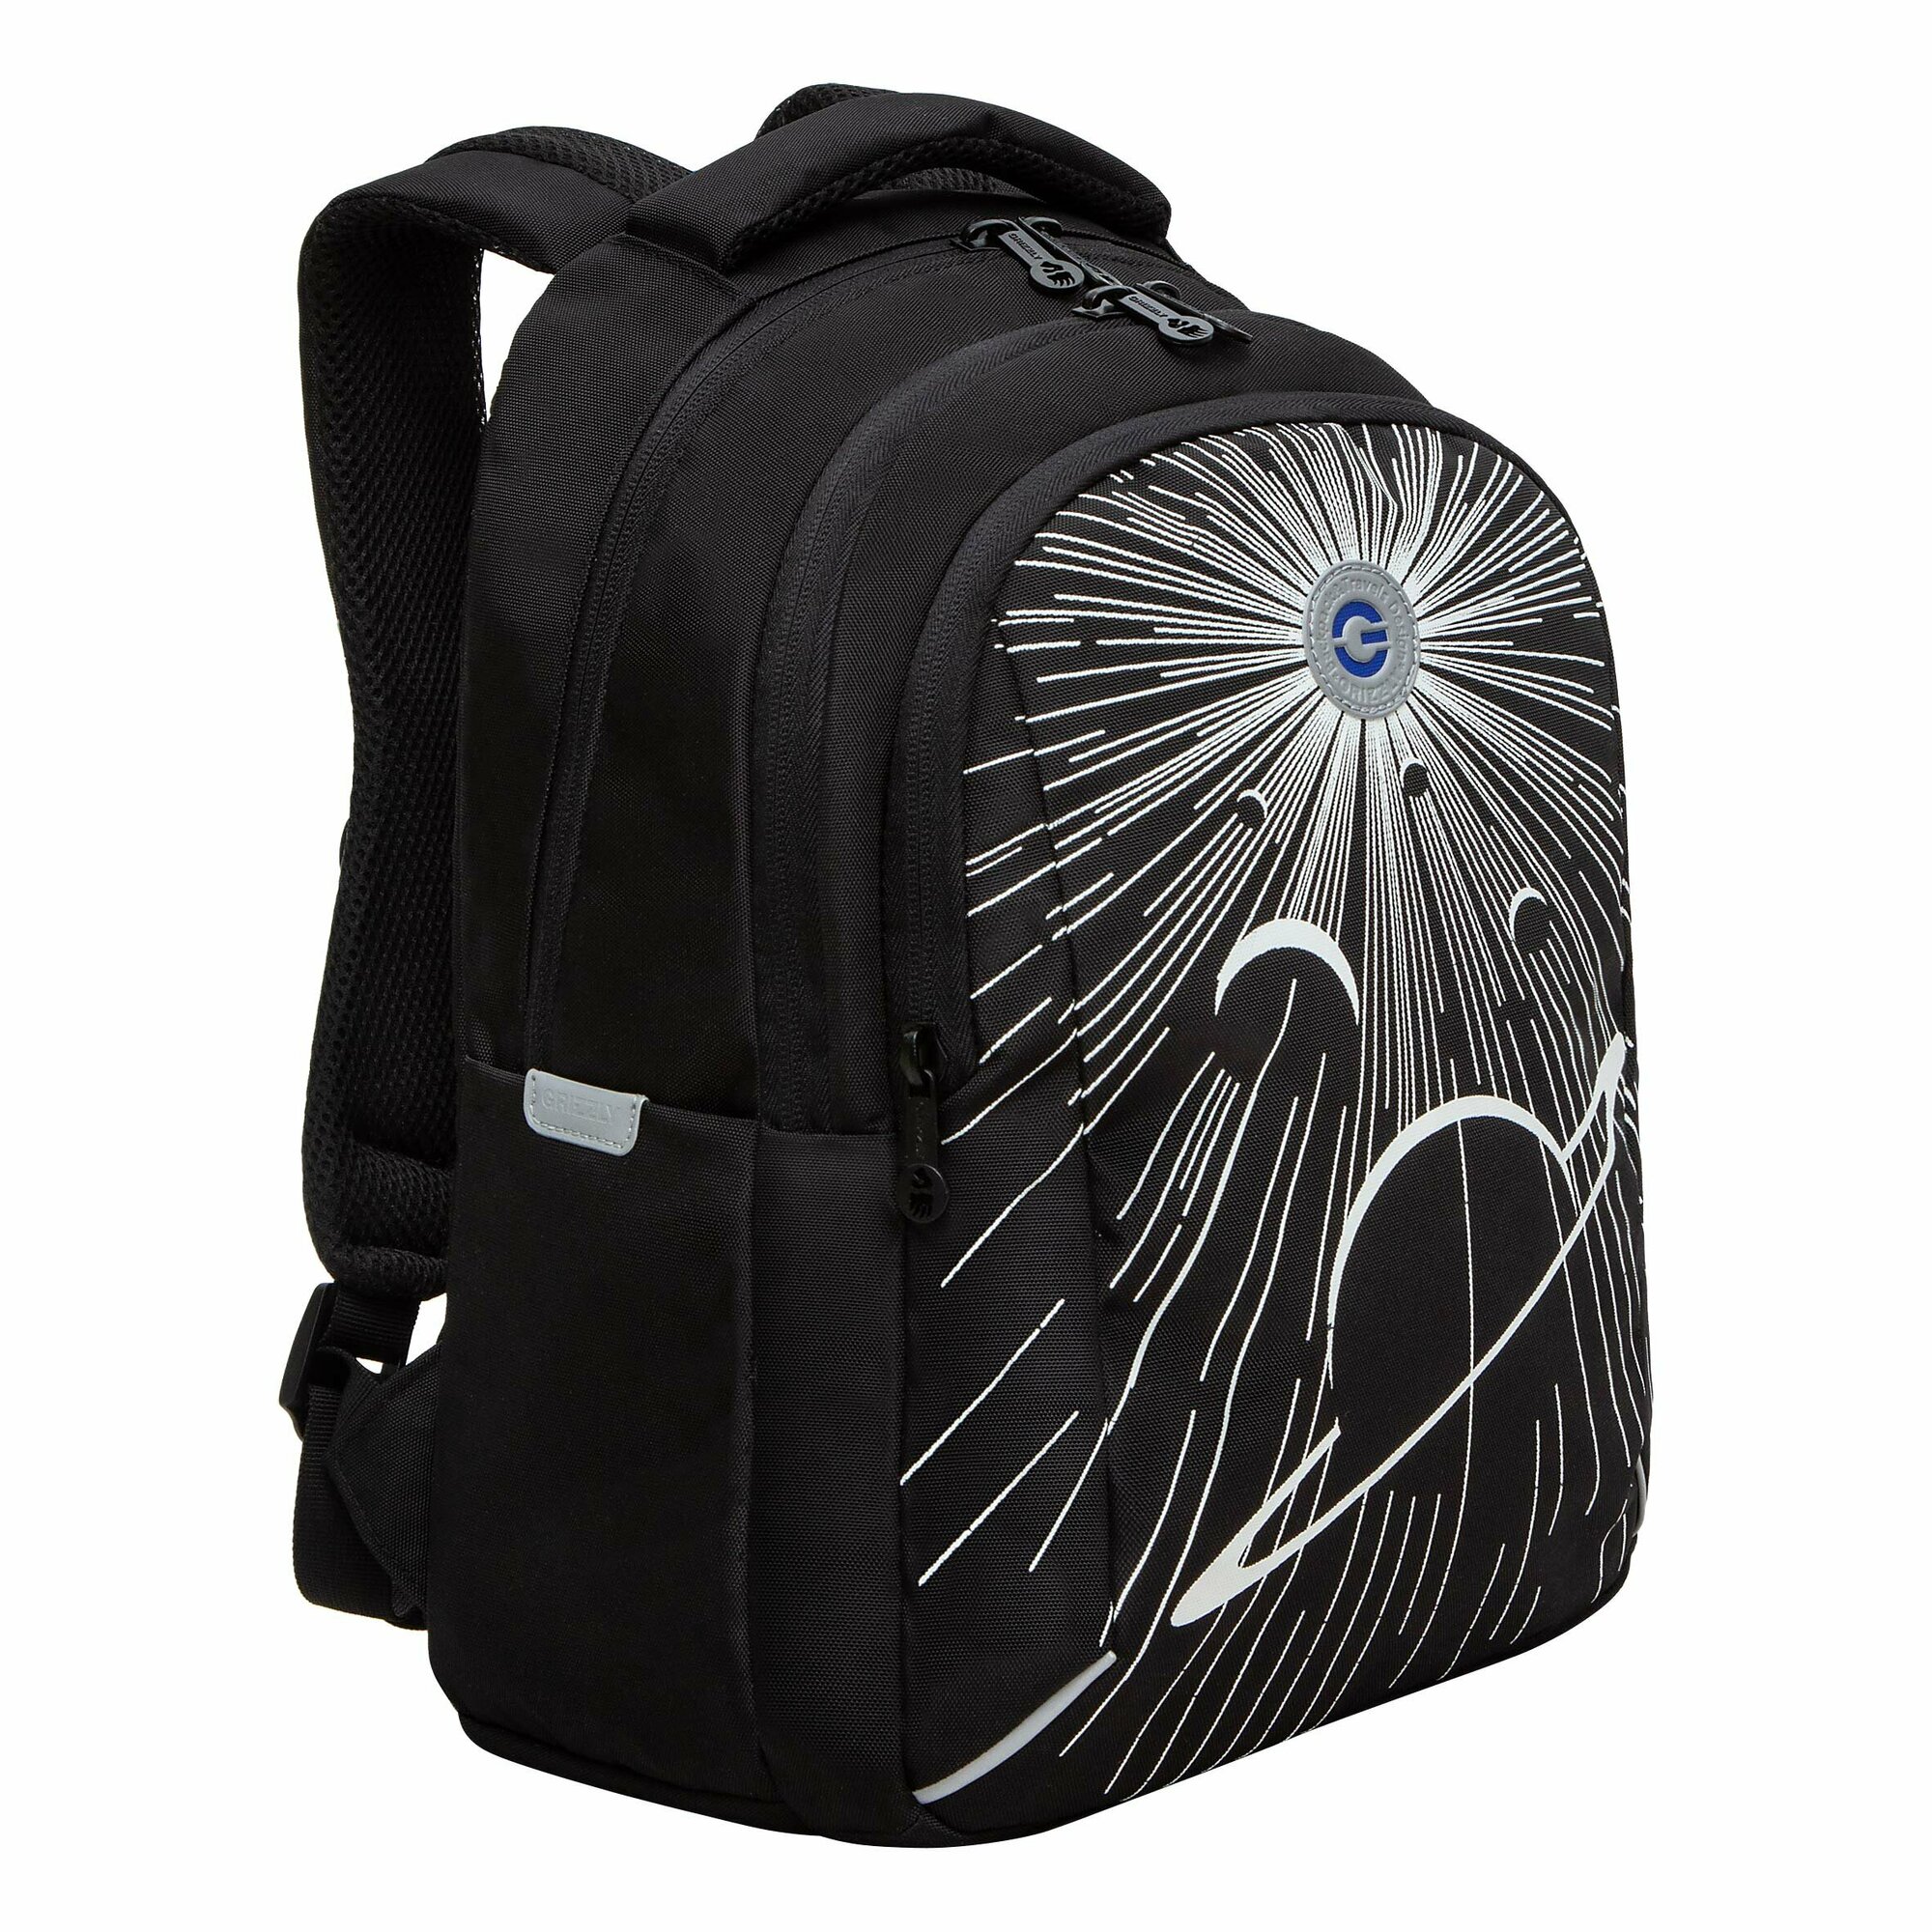 Рюкзак школьный GRIZZLYс карманом для ноутбука 13", анатомической спинкой, для мальчика RB-452-2/1